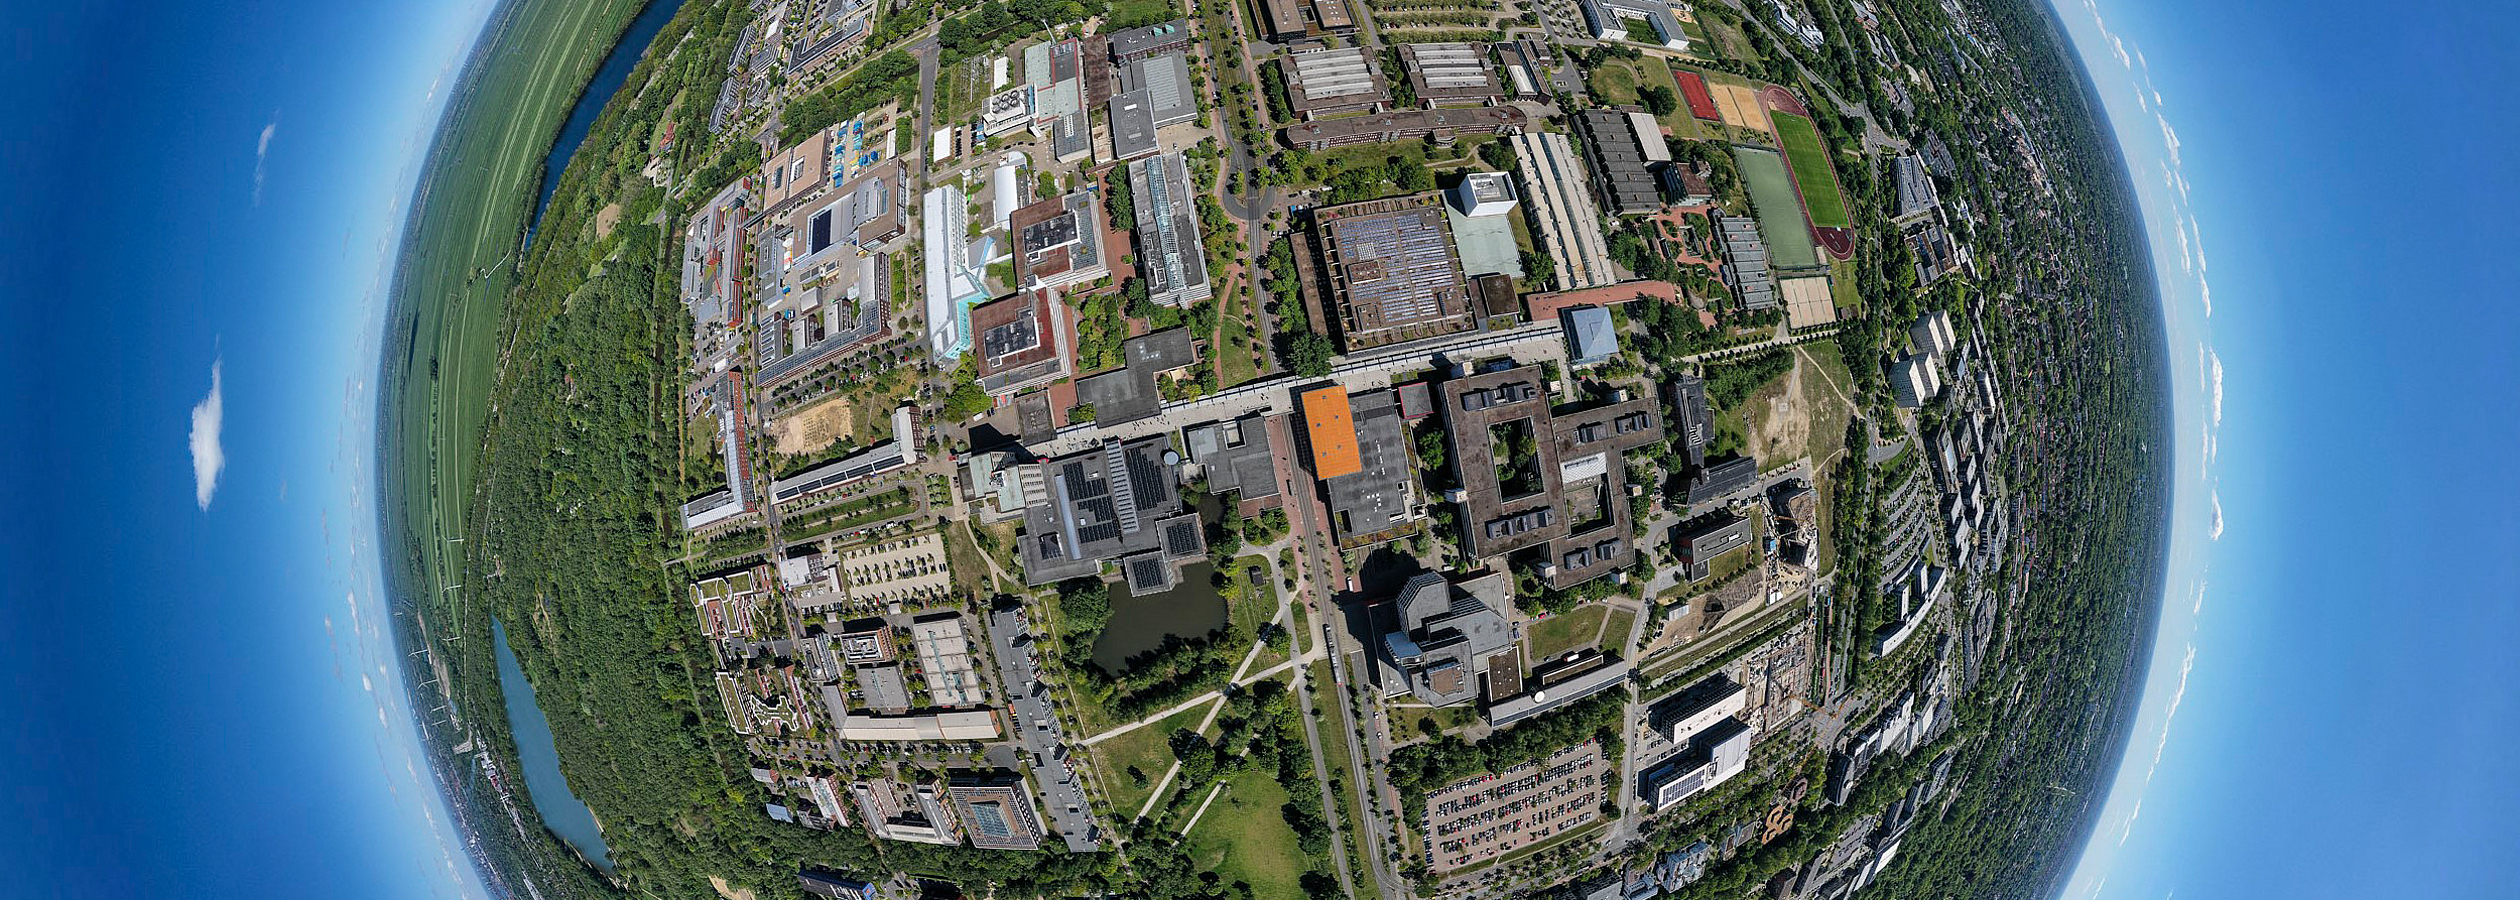 Mit einem Fischaugenobjektiv aufgenommenes Luftbild welches den Campus der Universität Bremen als von blauem Himmel umgebenen Globus erscheinen lässt.